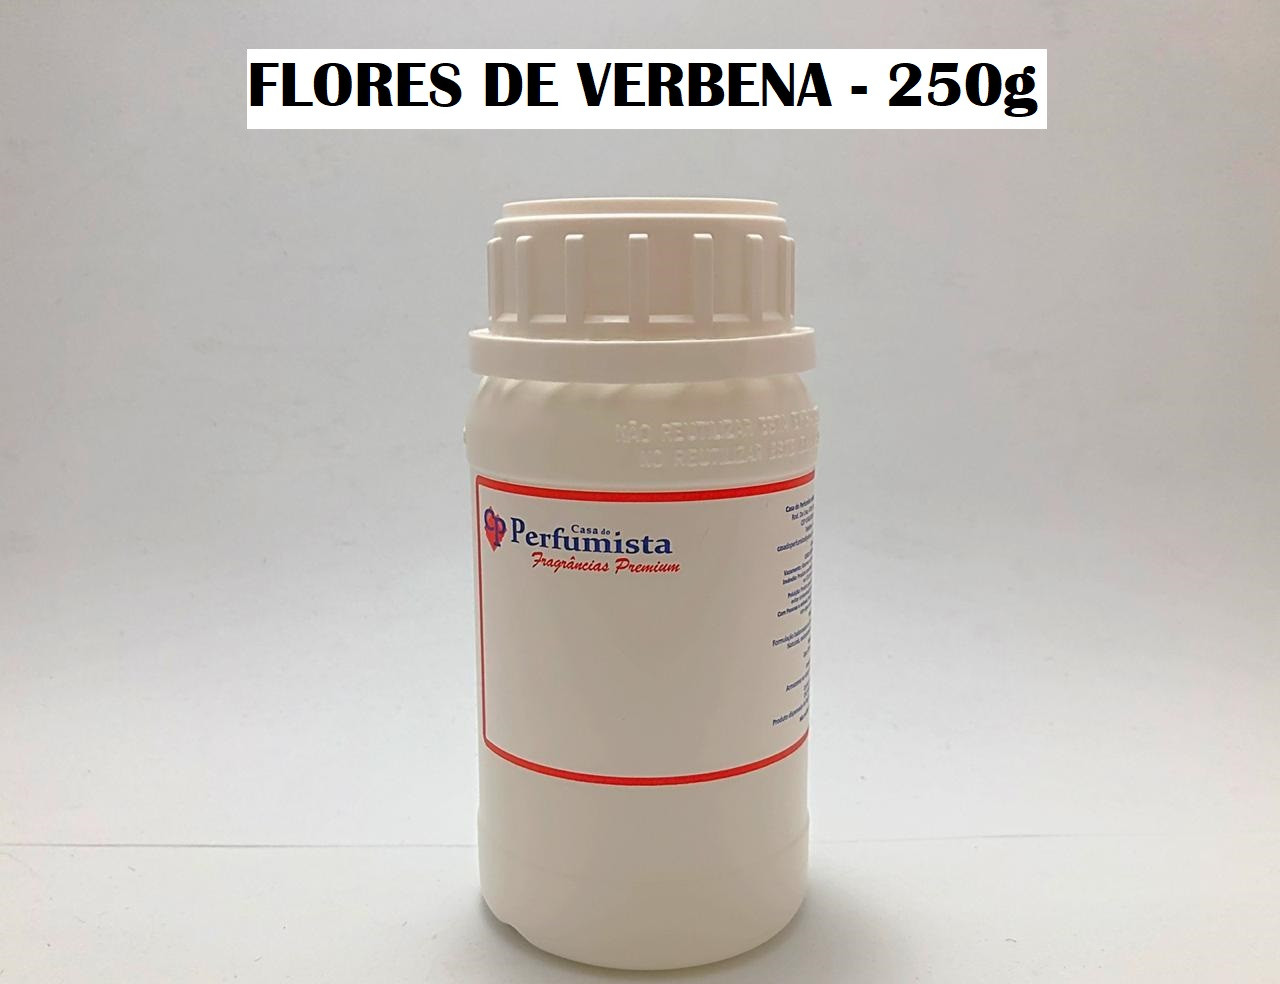 FLORES DE VERBENA - 250g